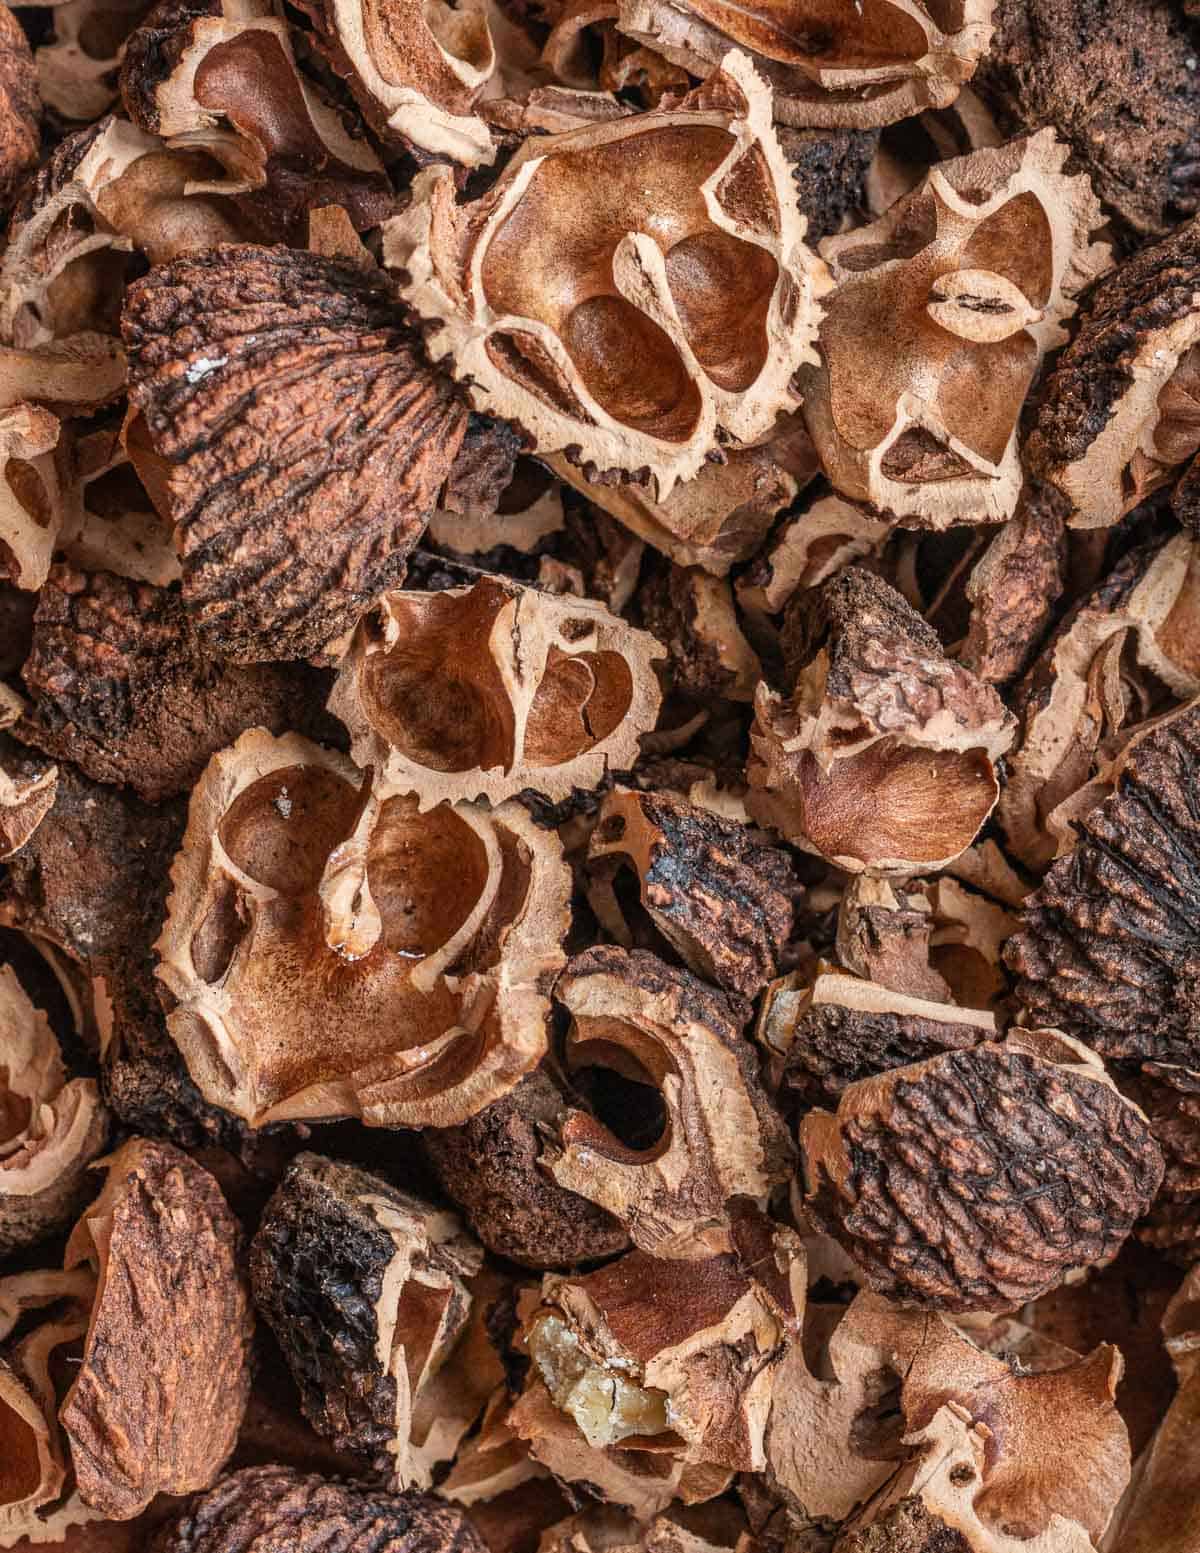 Black walnut shells 